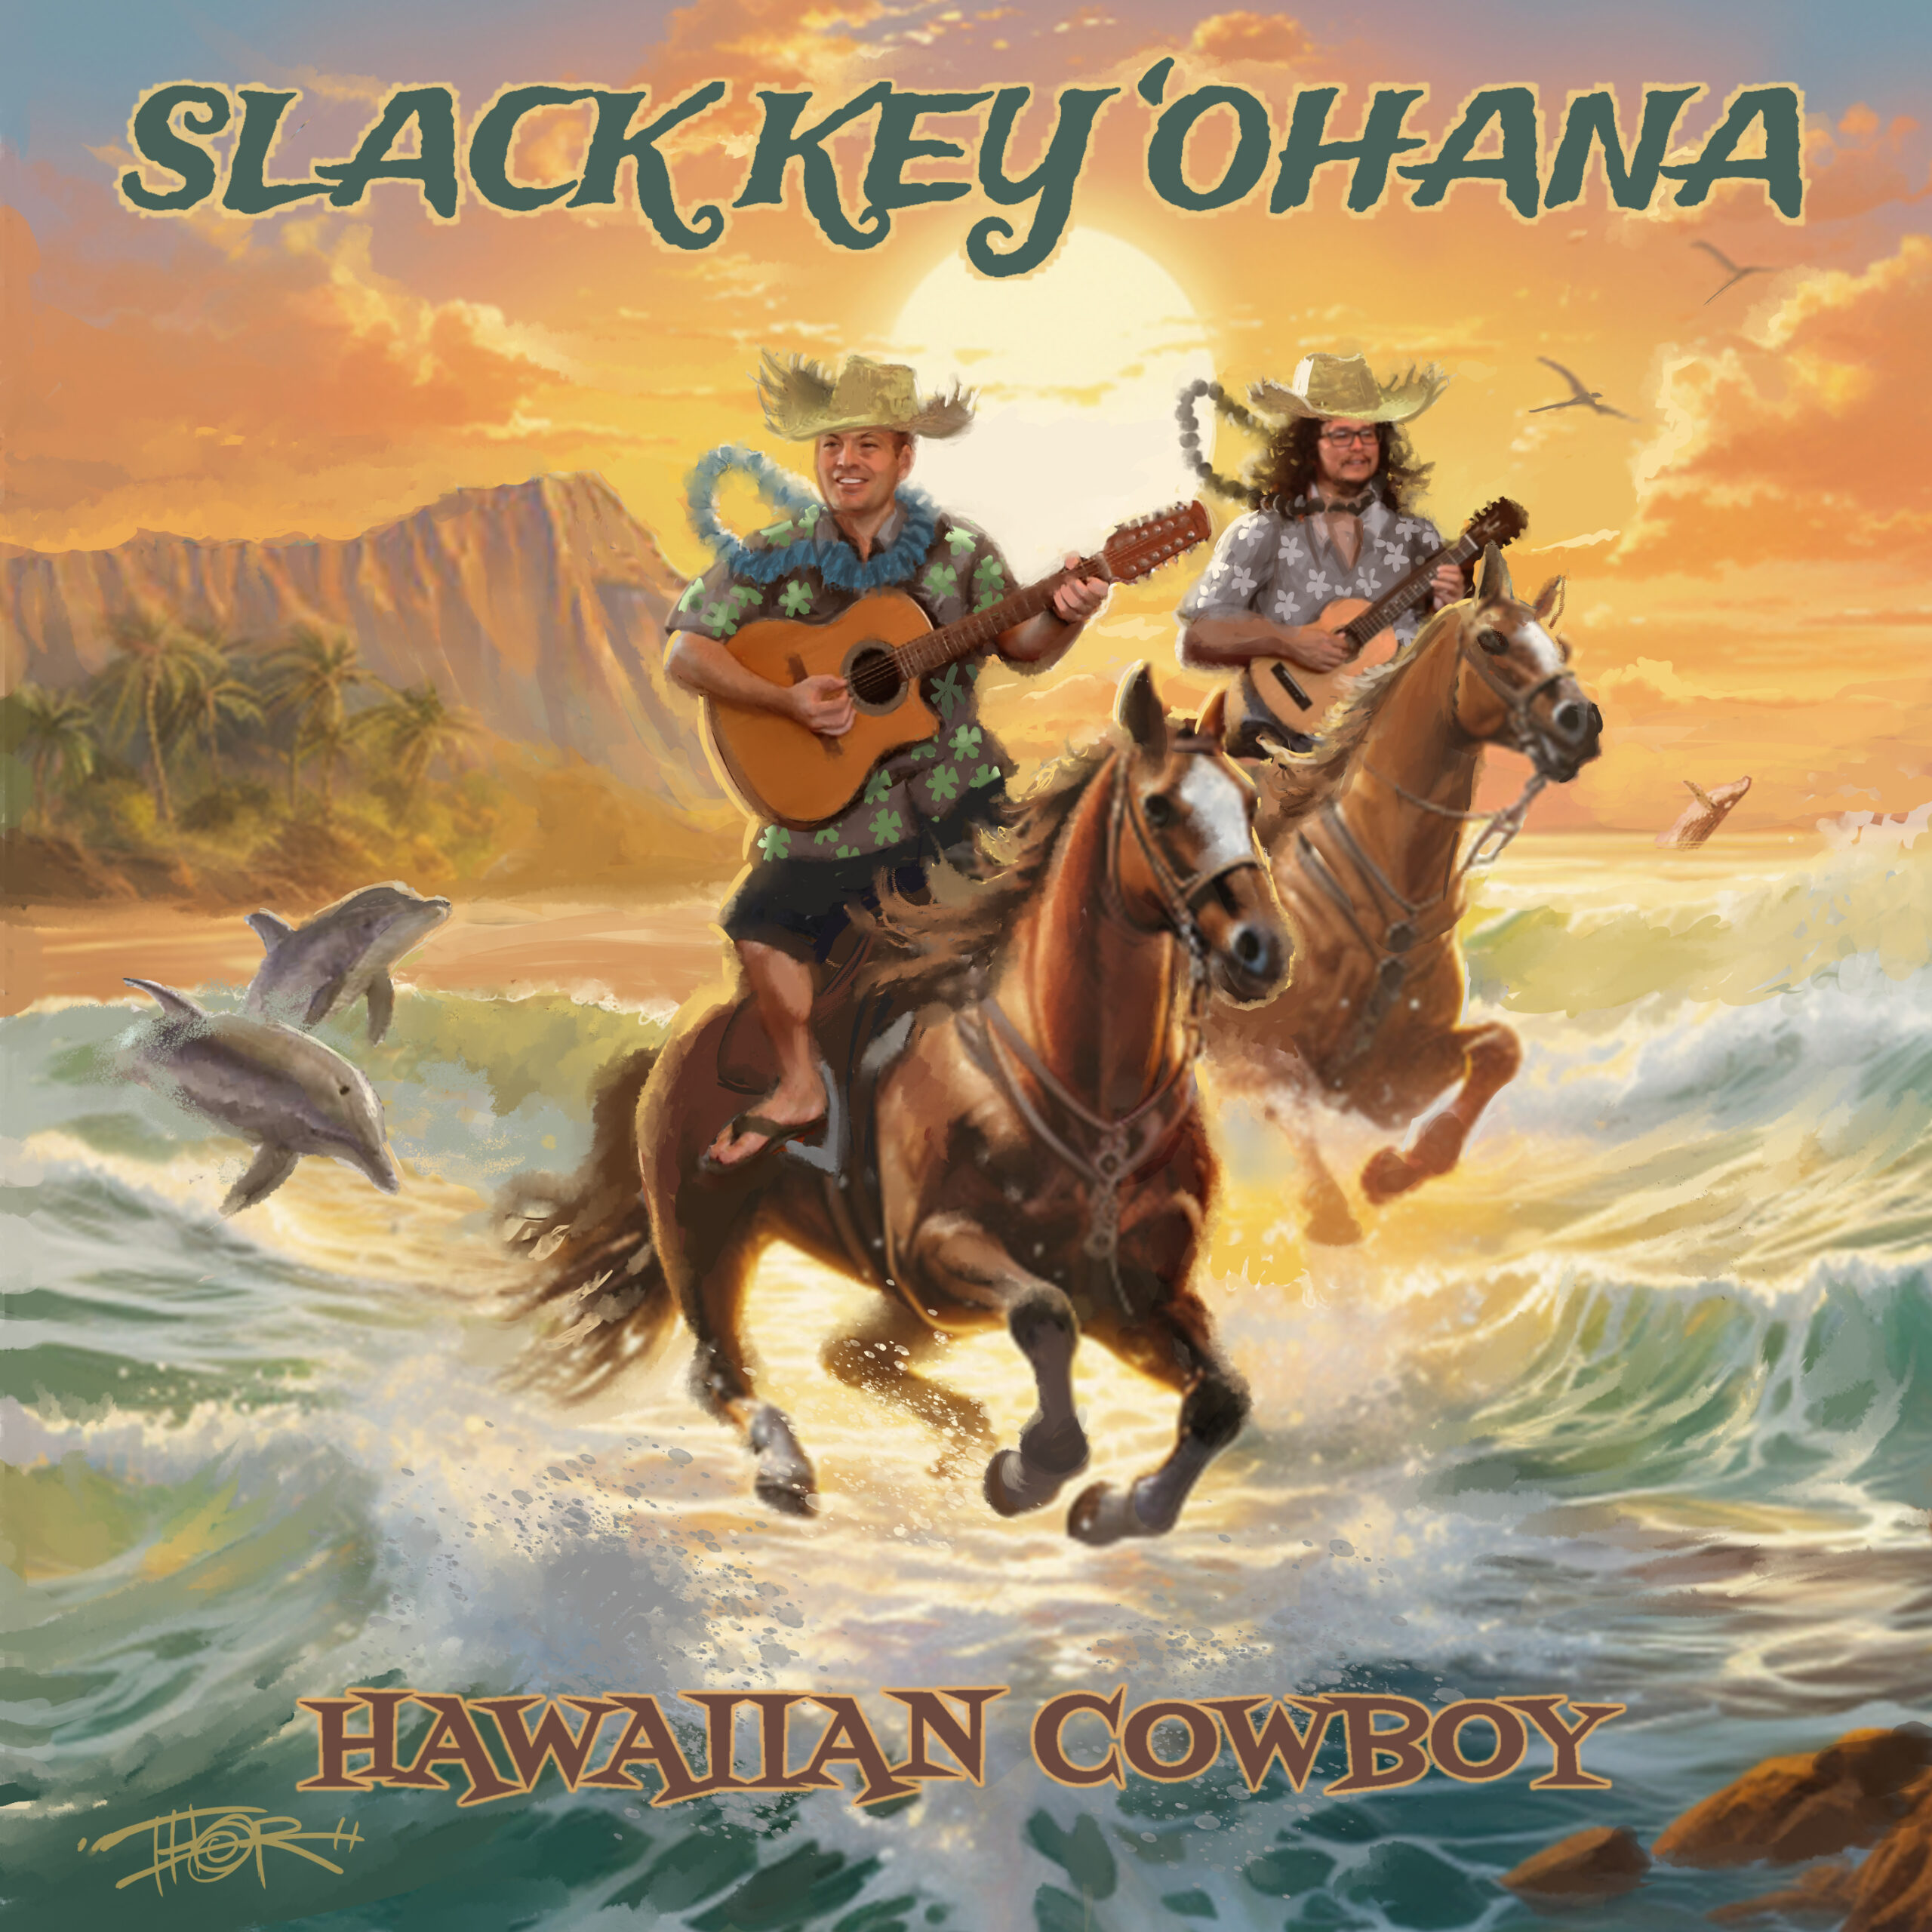 Slack Key ‘Ohana Rides High with New Album ‘Hawaiian Cowboy’